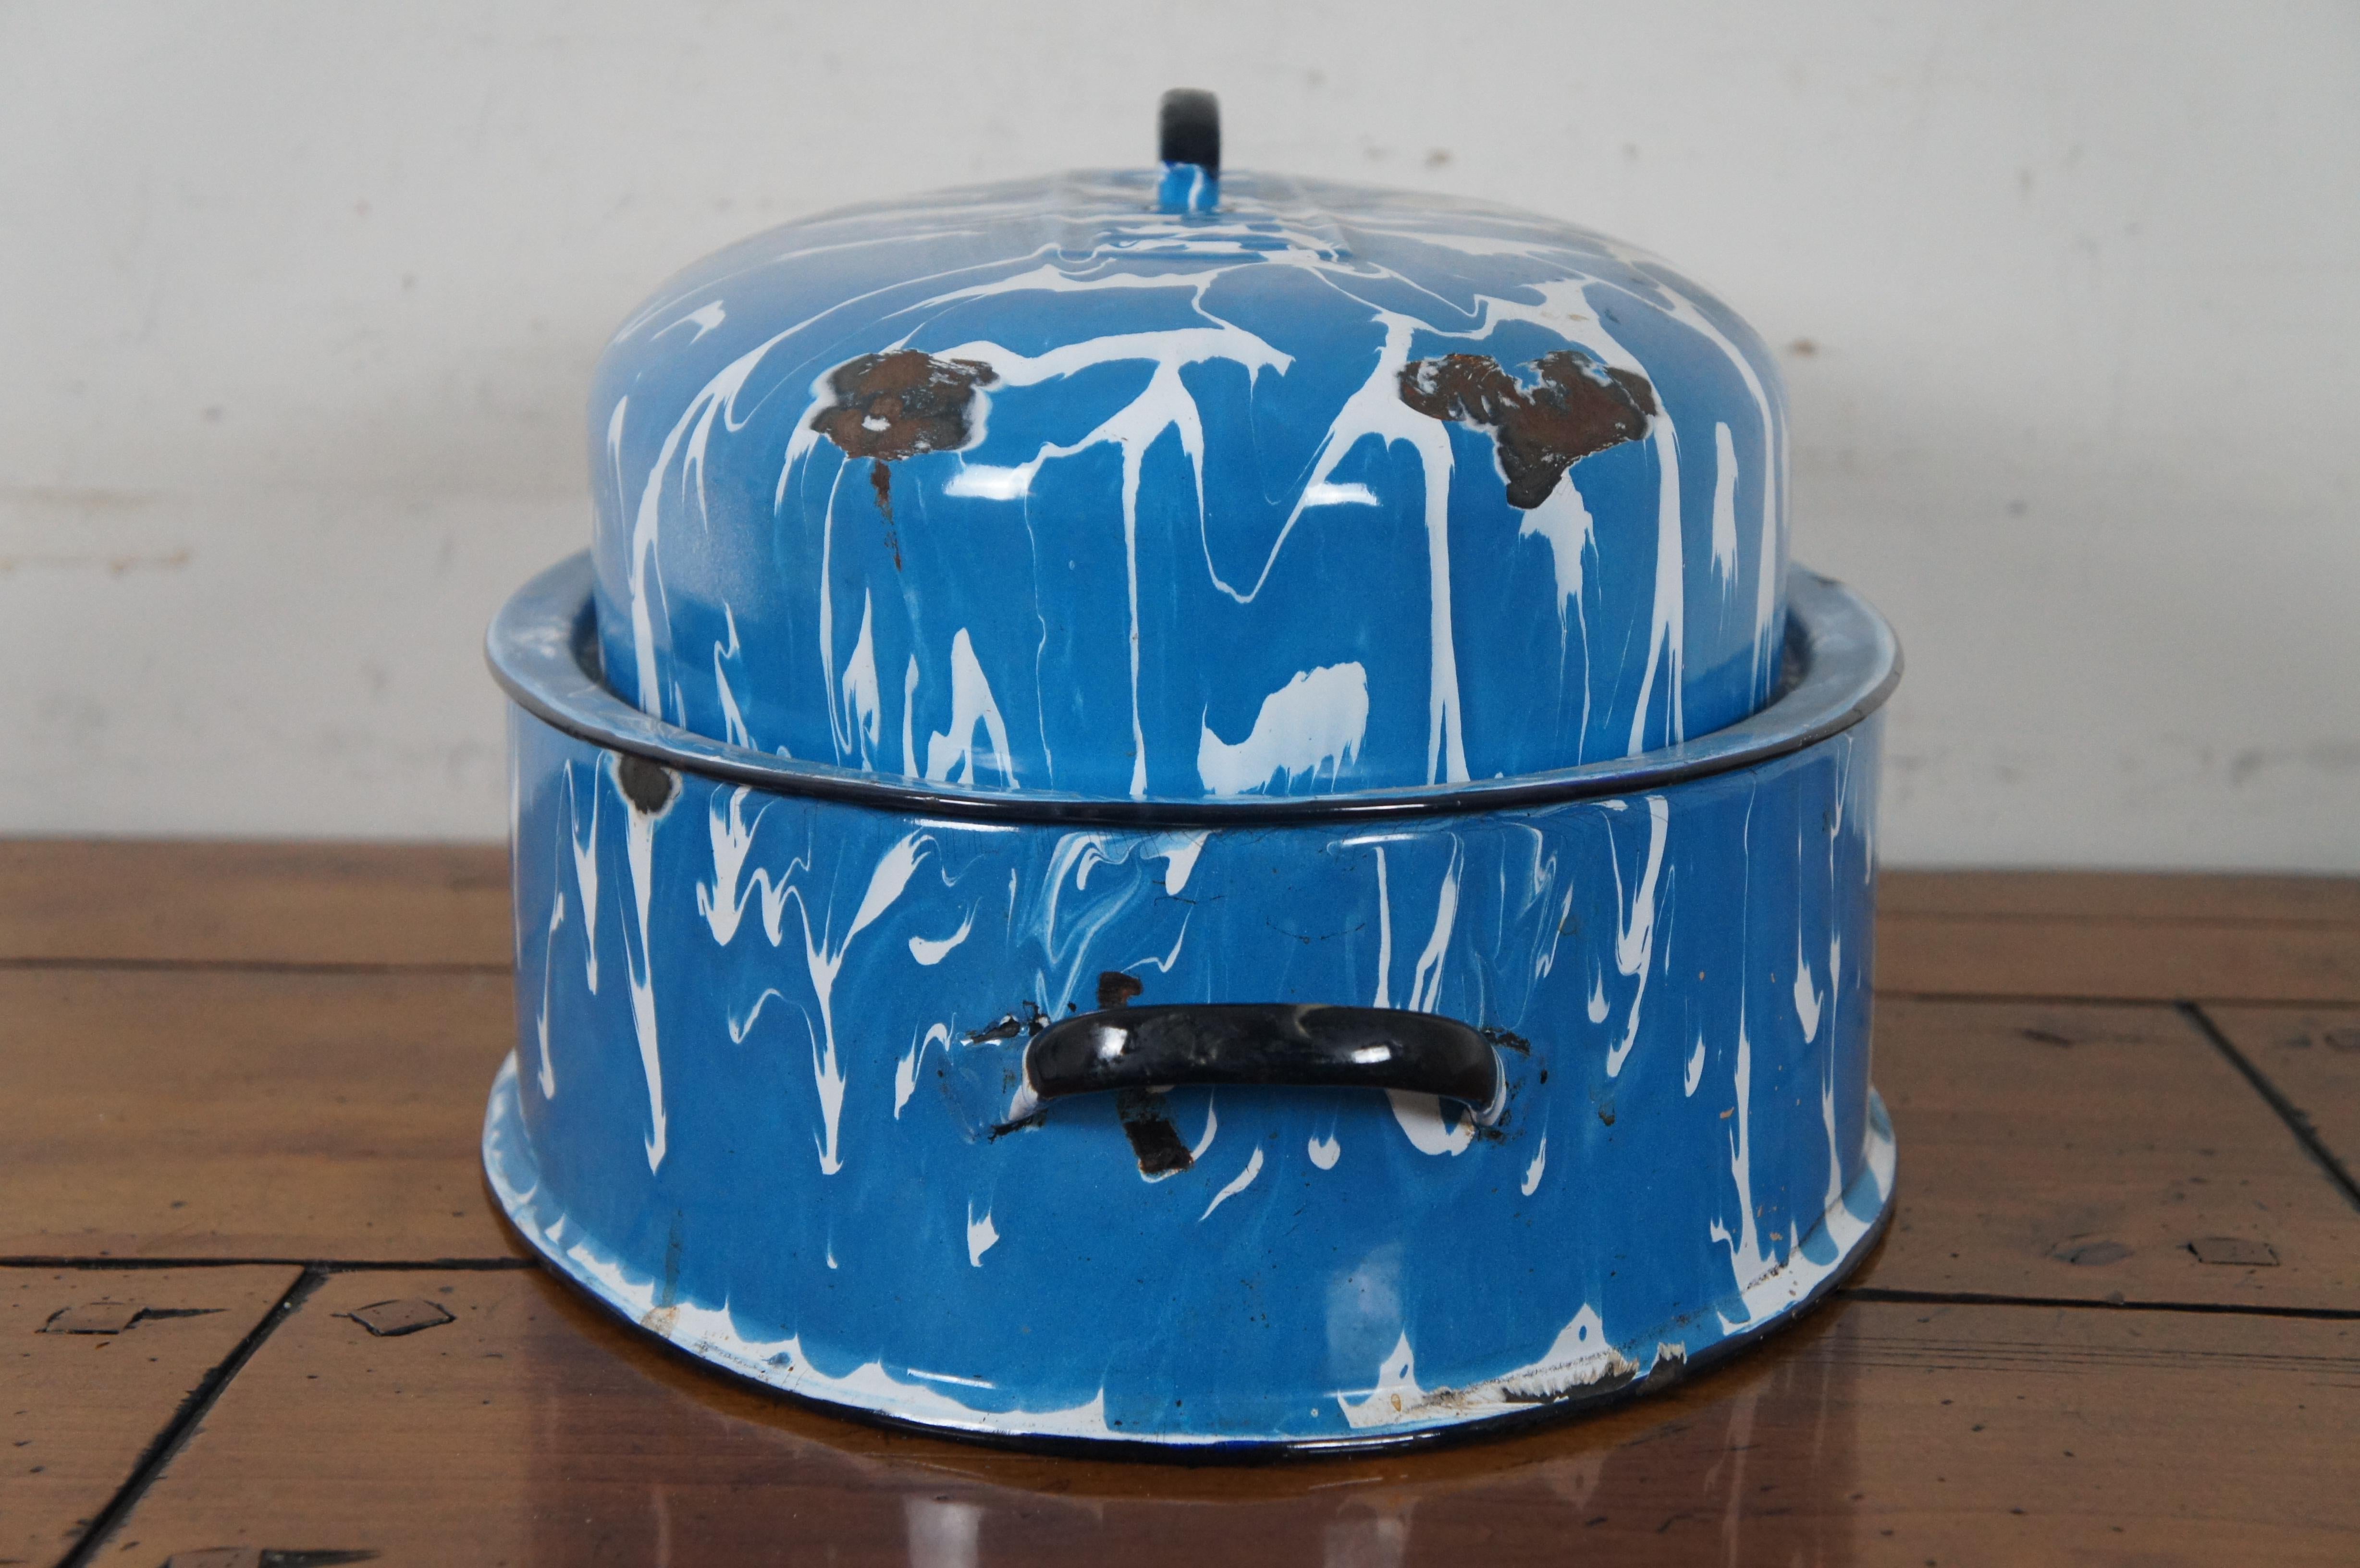 vintage blue enamel roasting pan with lid